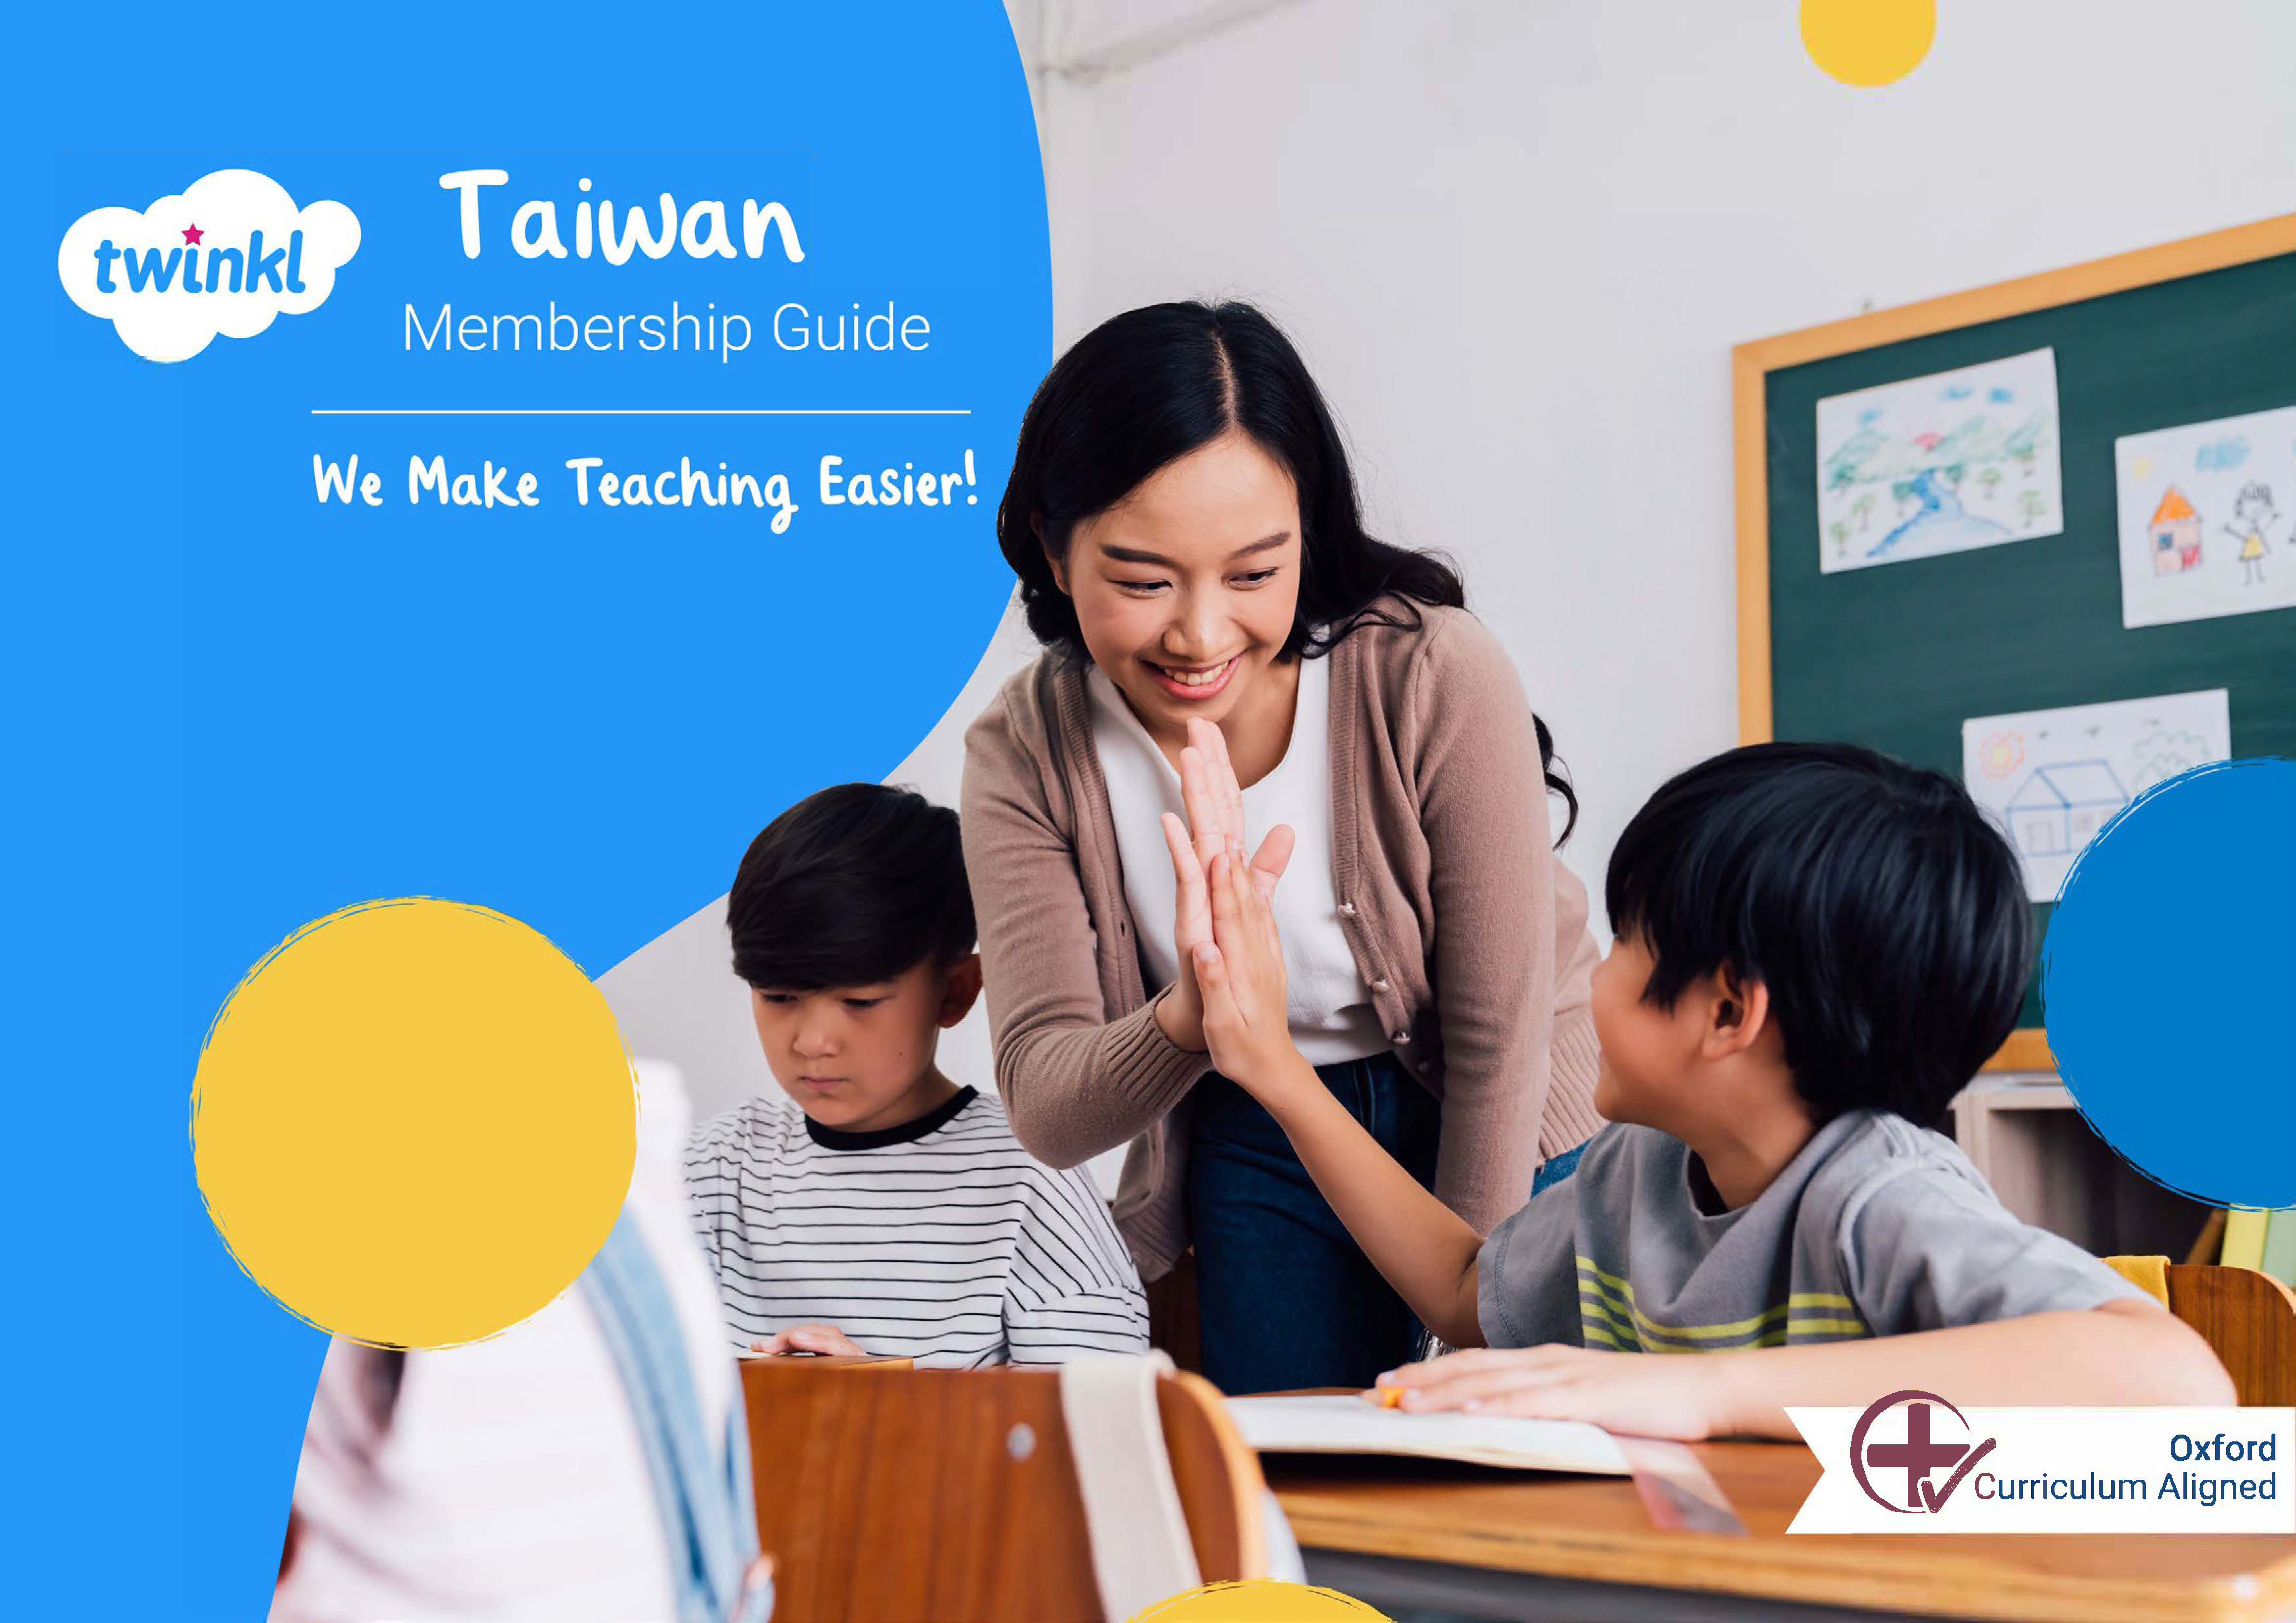 twinkl Taiwan  We make teaching easier